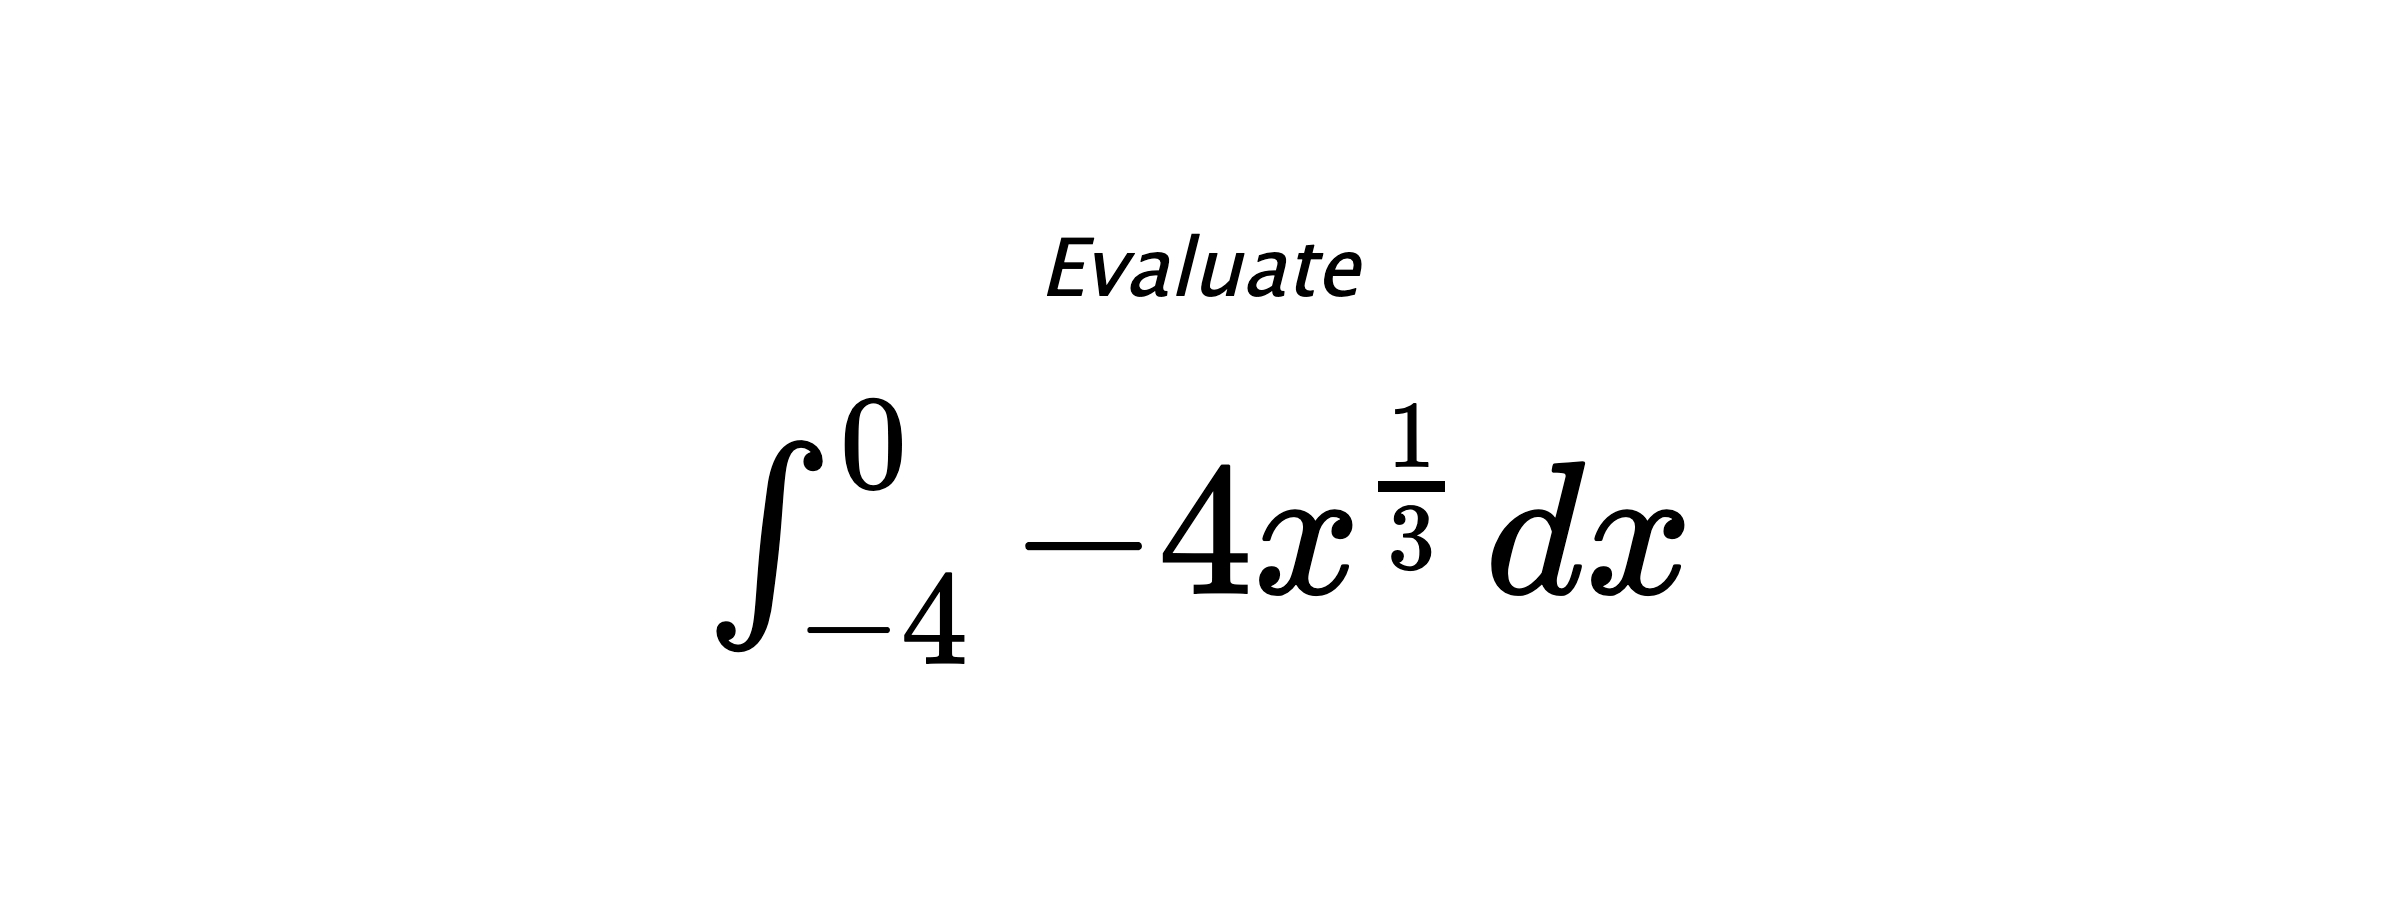 Evaluate $ \int_{-4}^{0} -4x^{\frac{1}{3}} \hspace{0.2cm} dx $